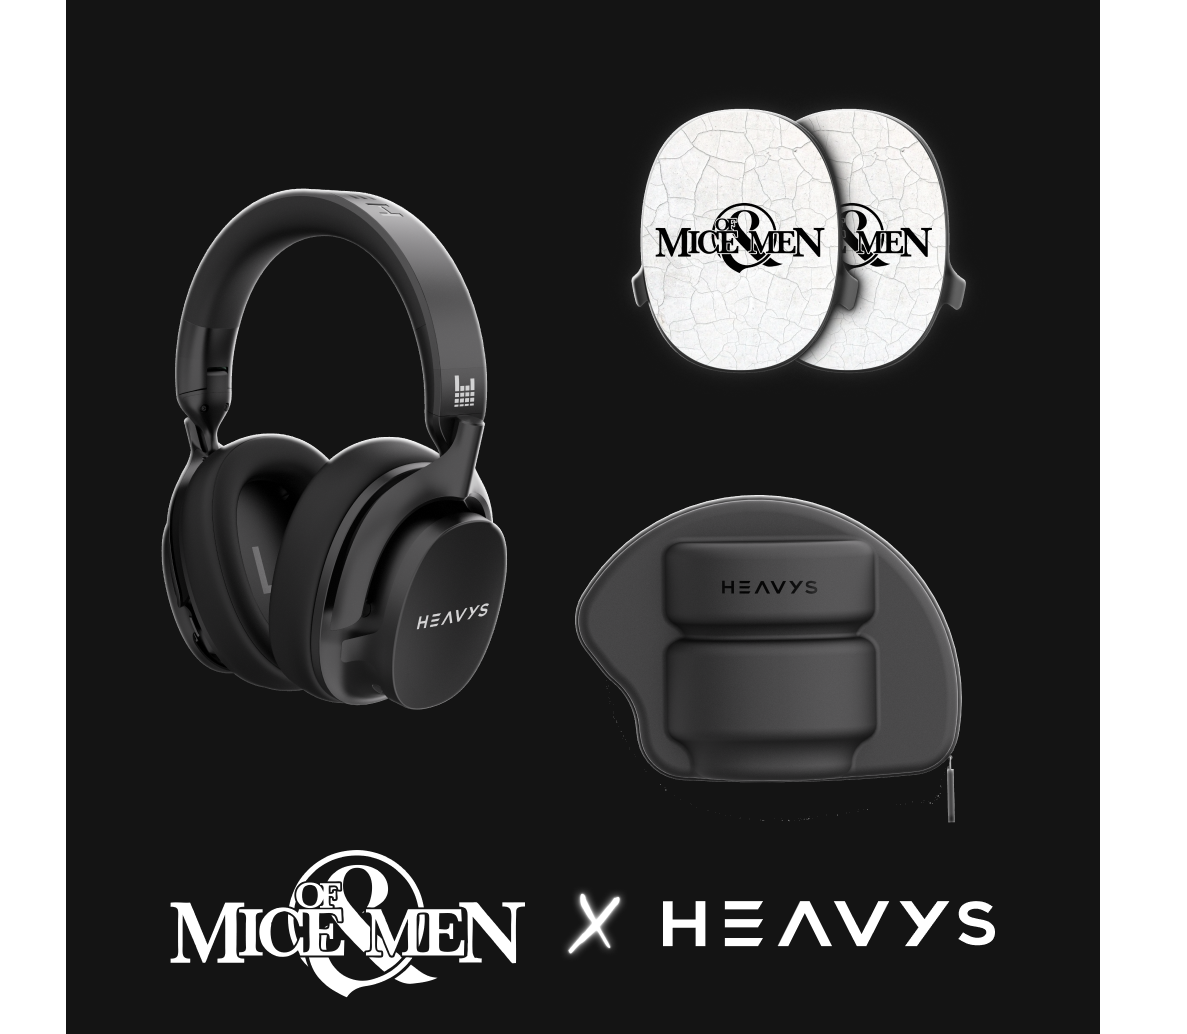 of mice & men heavys headphones bundle